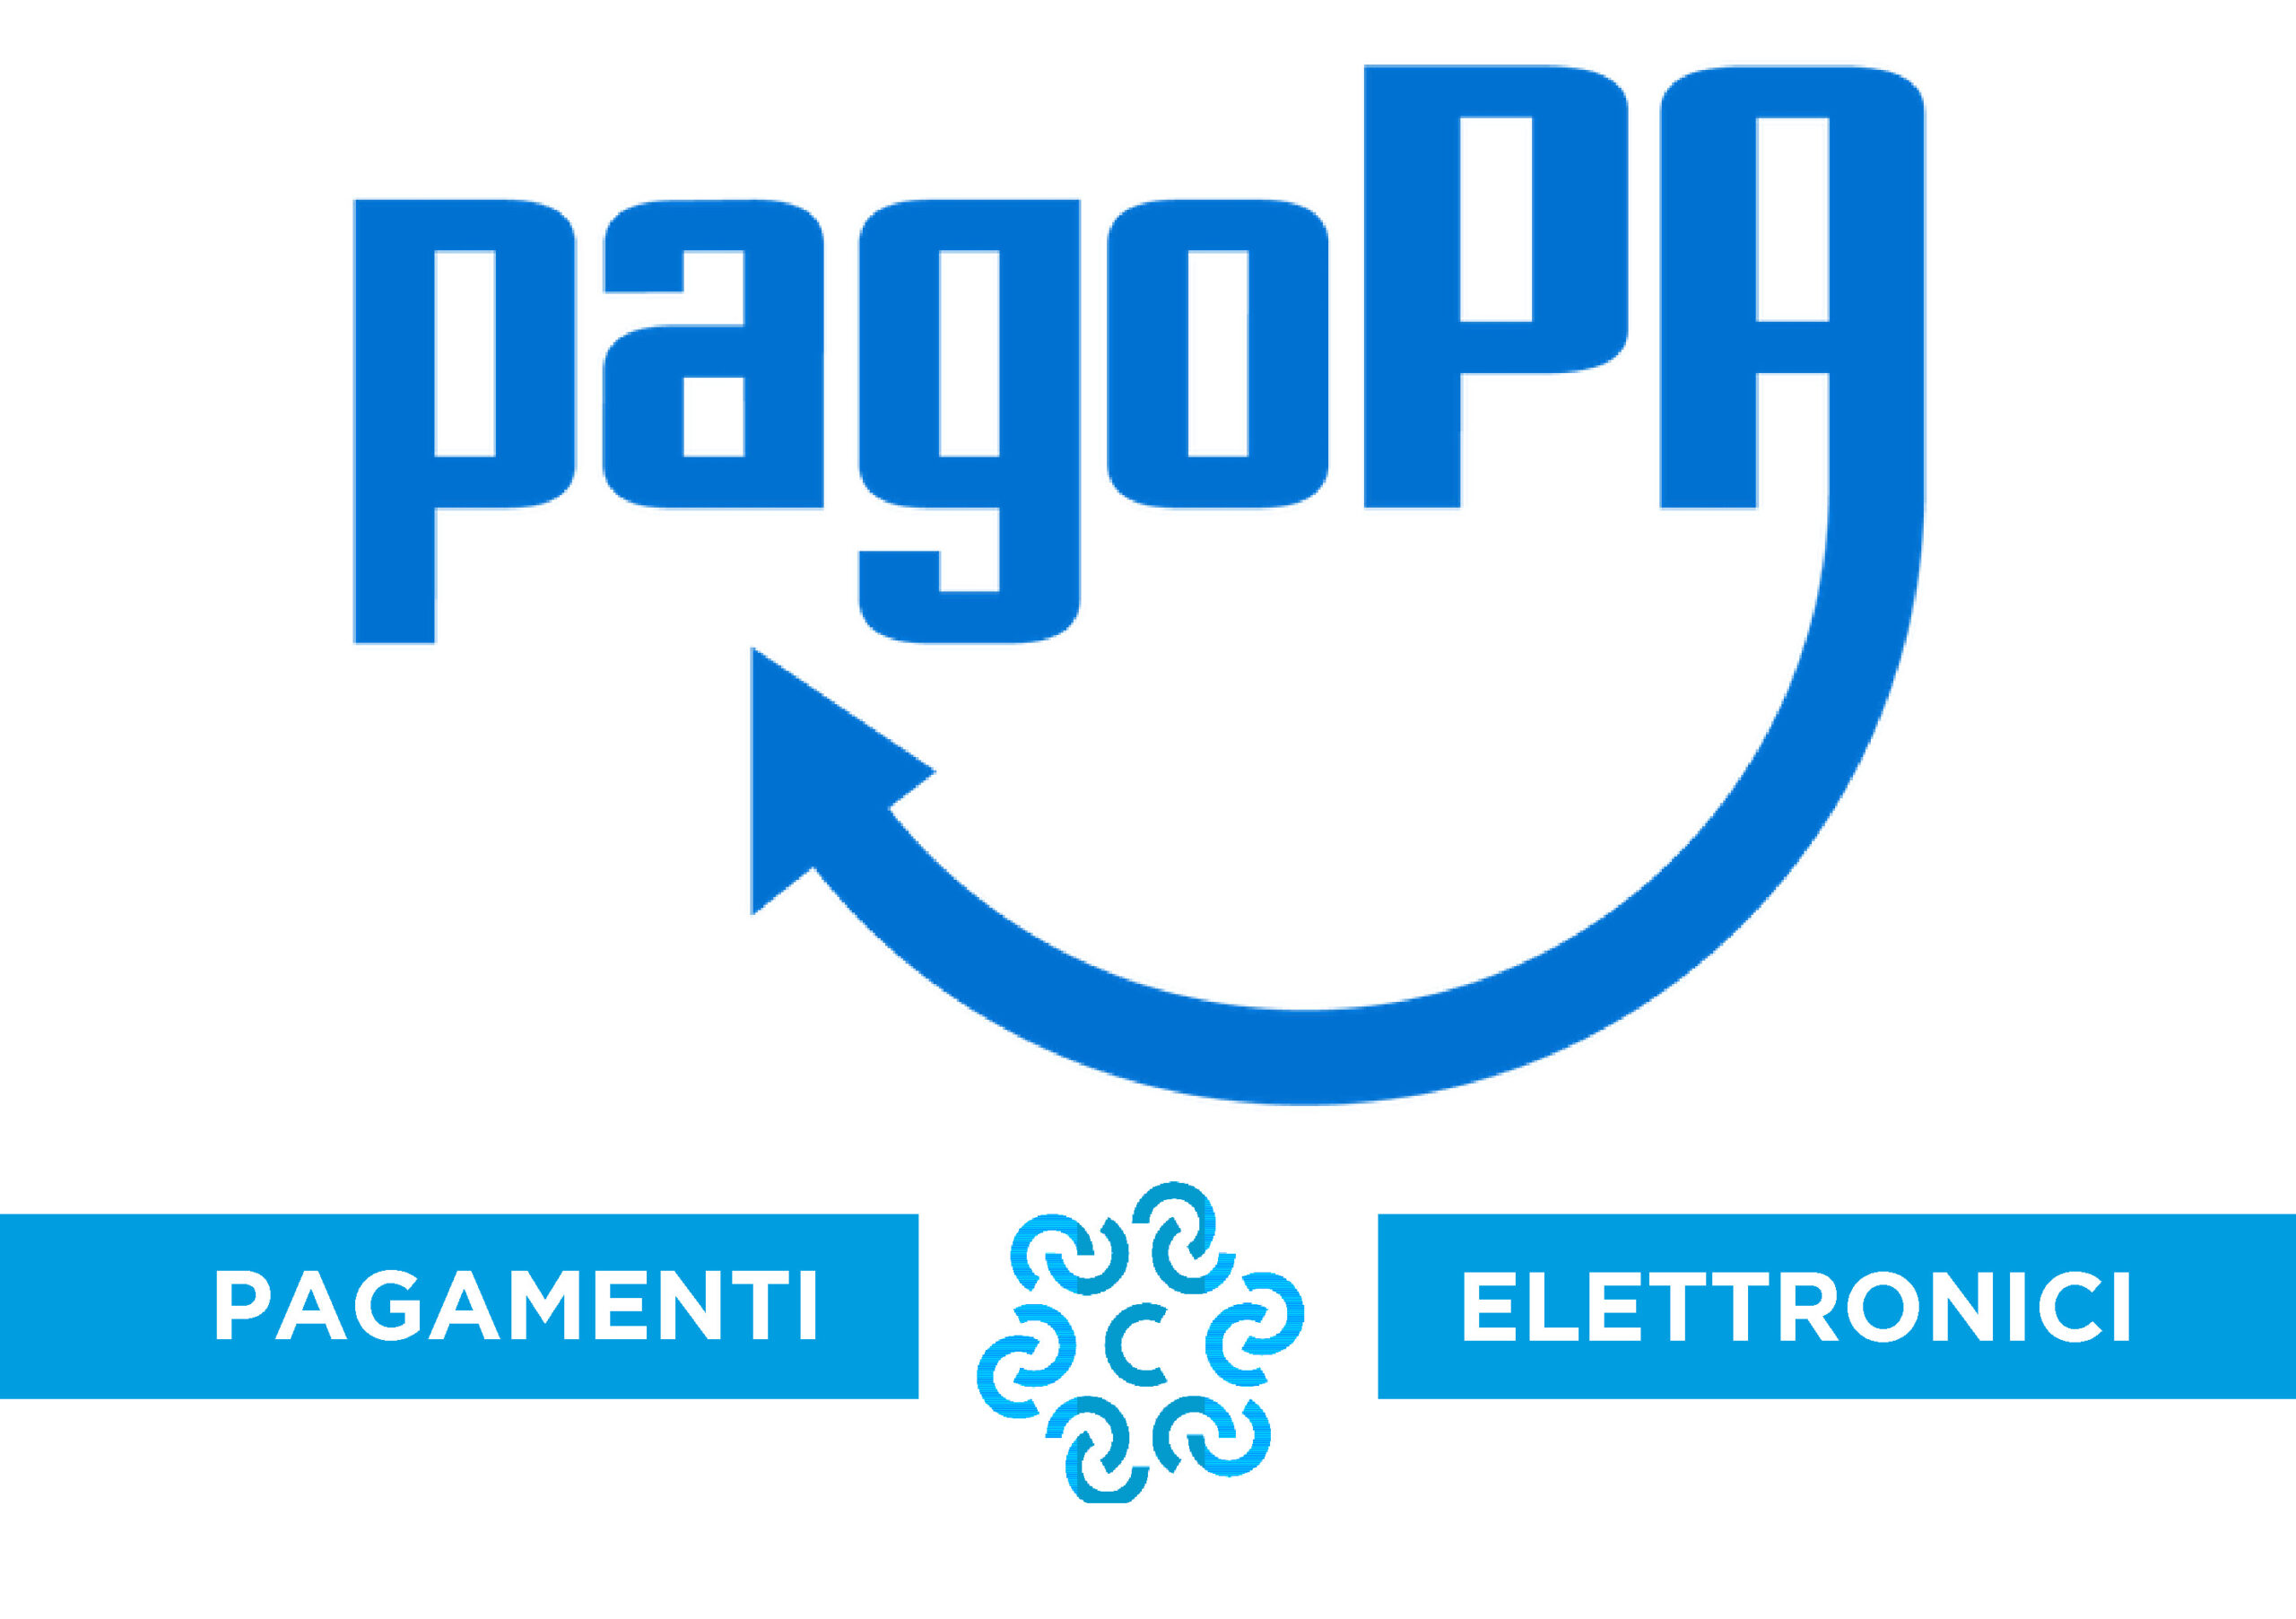 Pagamenti digitali con sistema di pagamento PagoPA